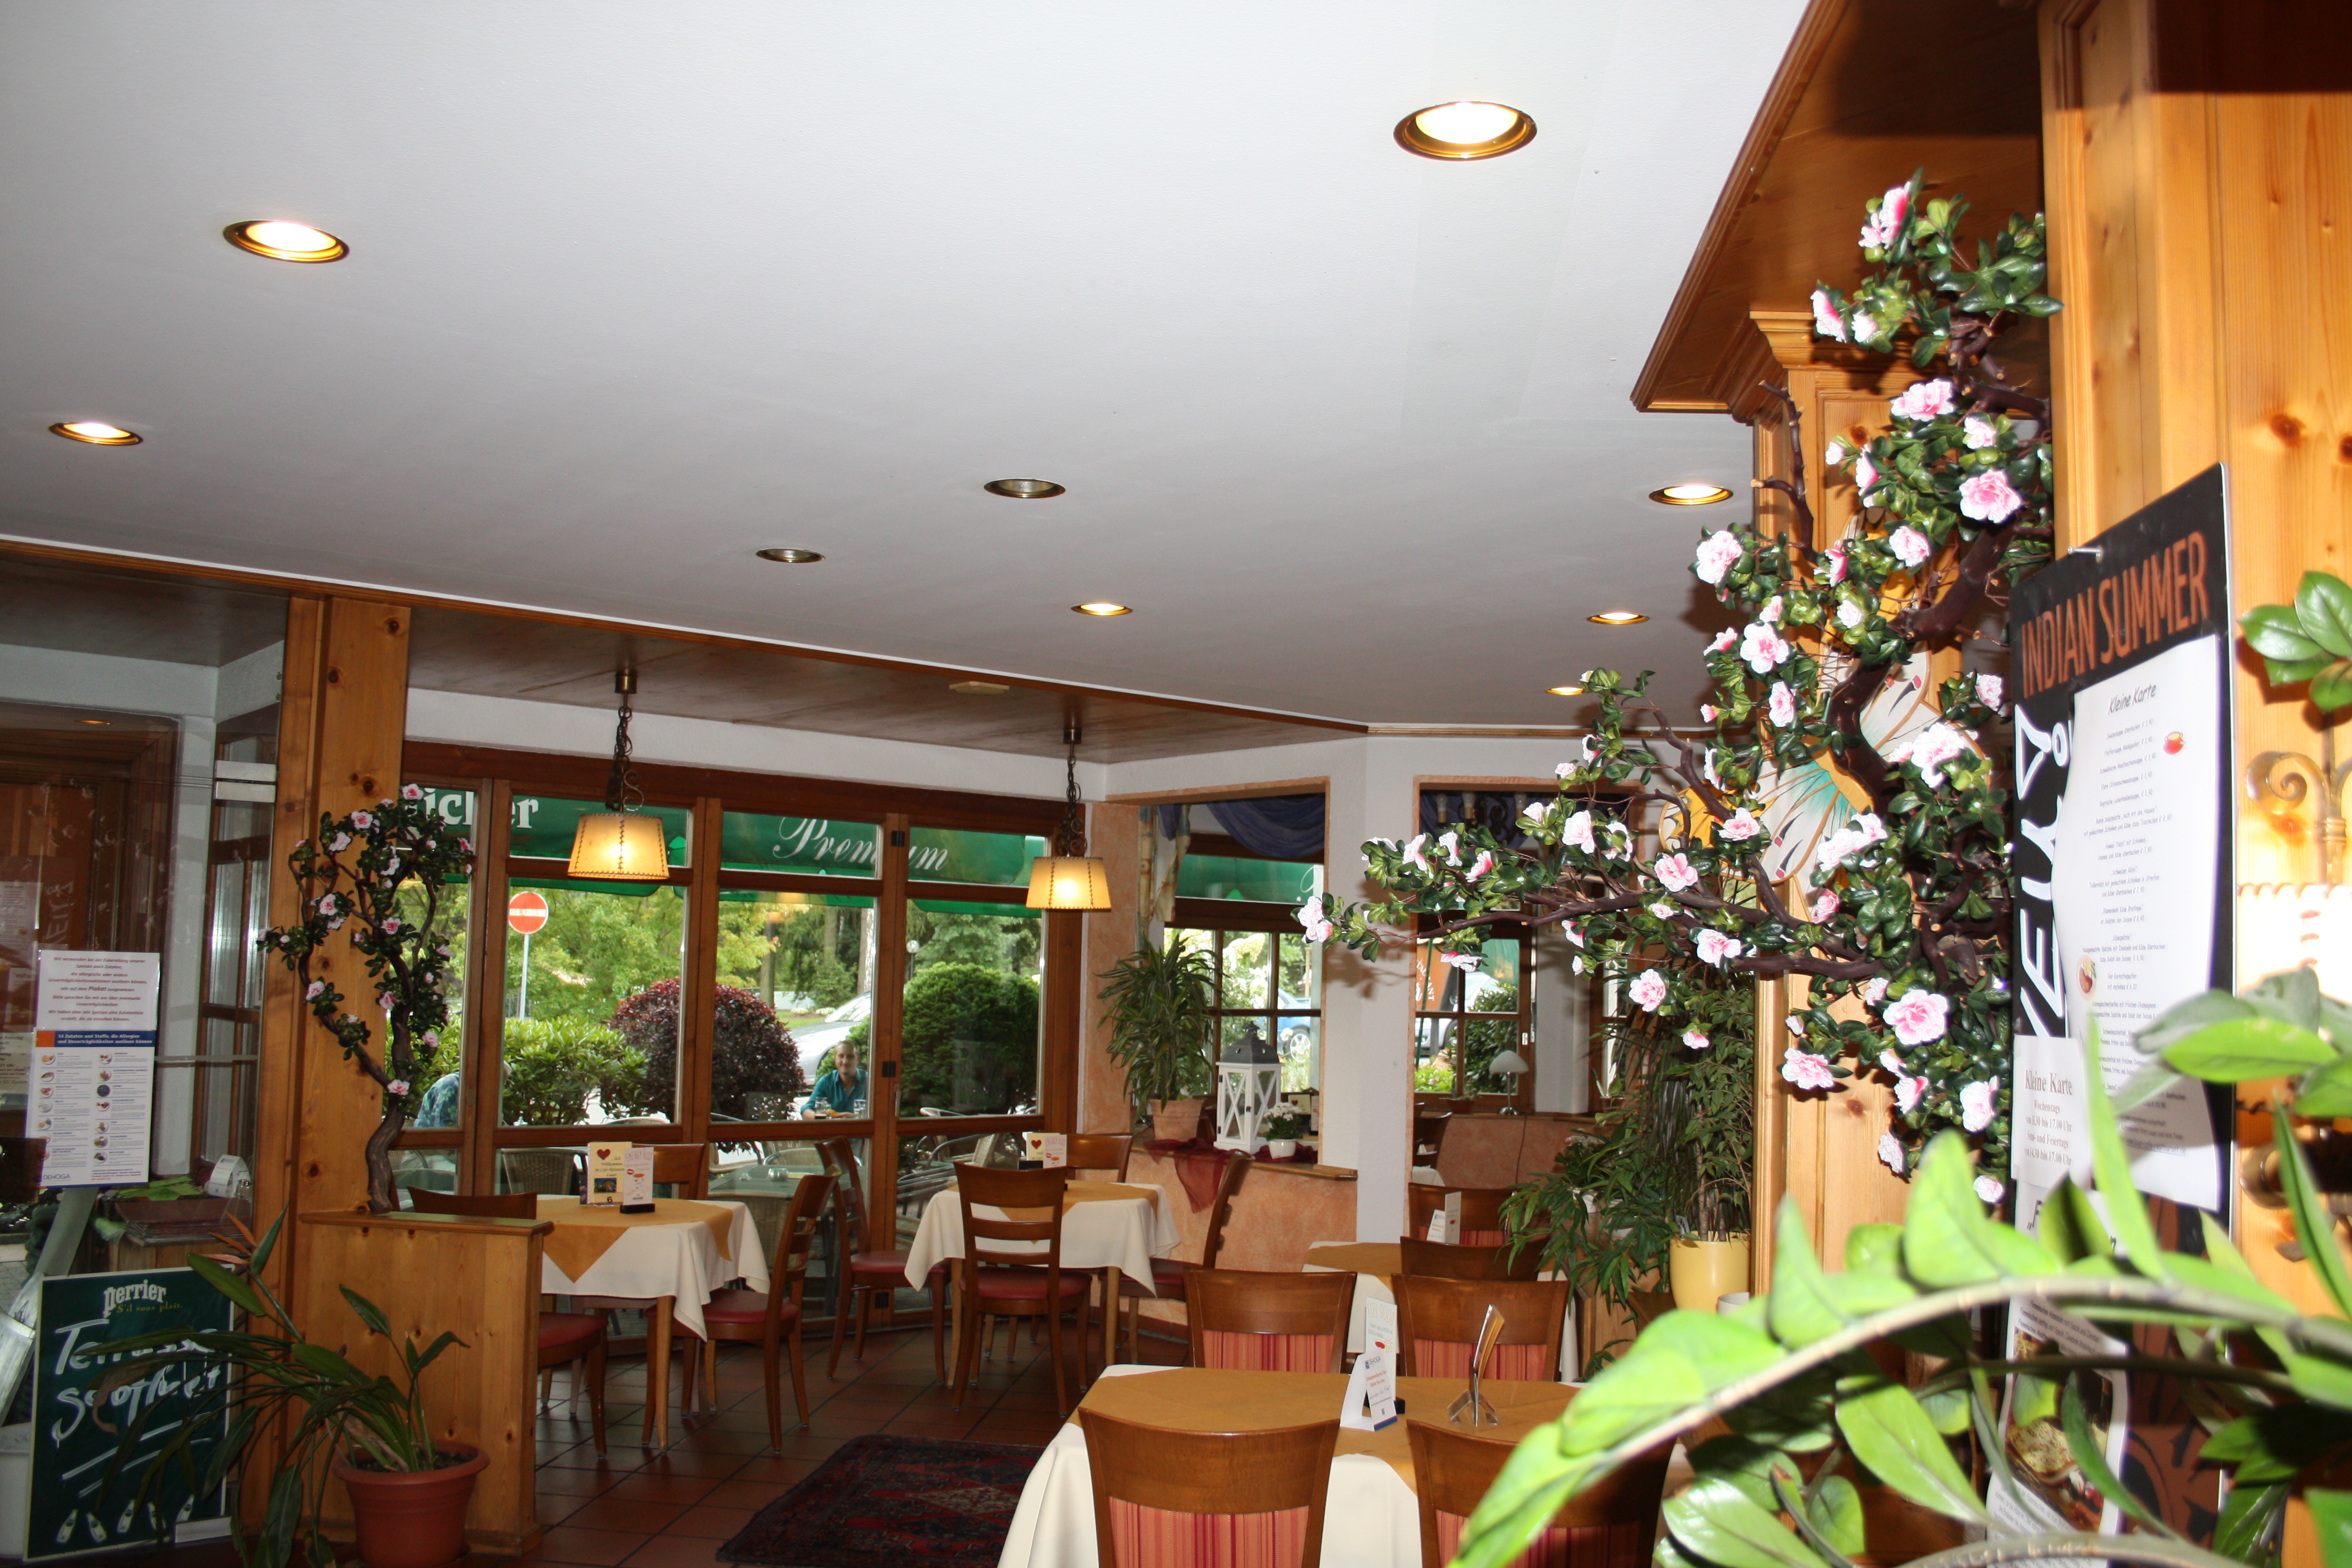 Restaurant-Cafebereich in der Pension Lauer, Bad Soden-Salmünster. 
